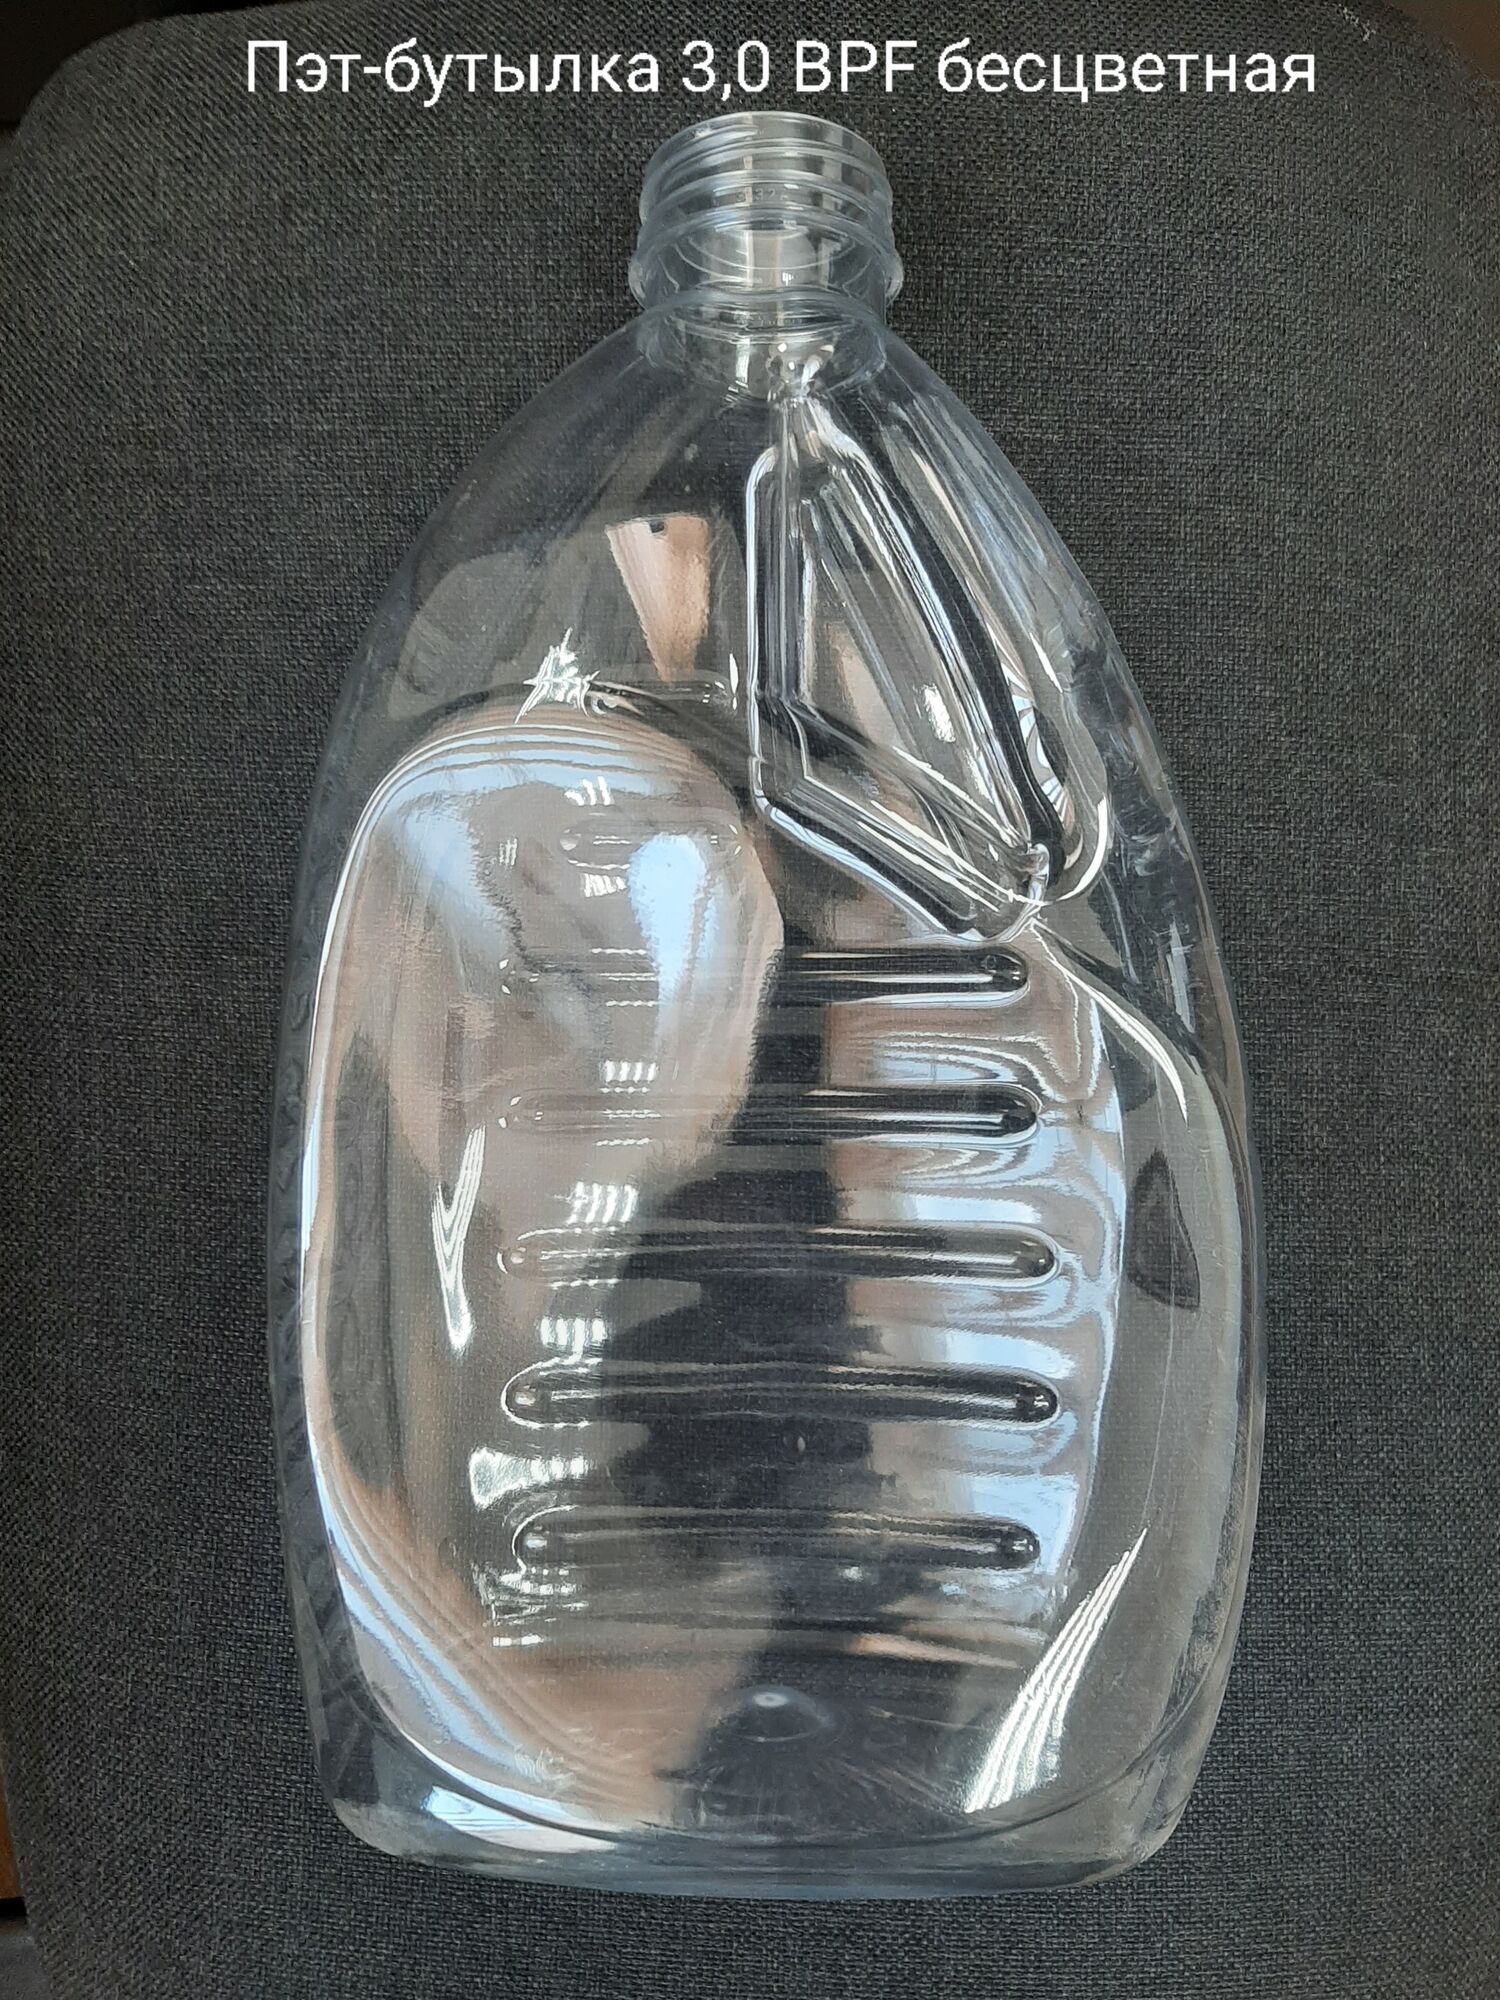 Пэт-бутылка 3,0 / 3STA, бесцветная (50 шт в упаковке) вес 86,5